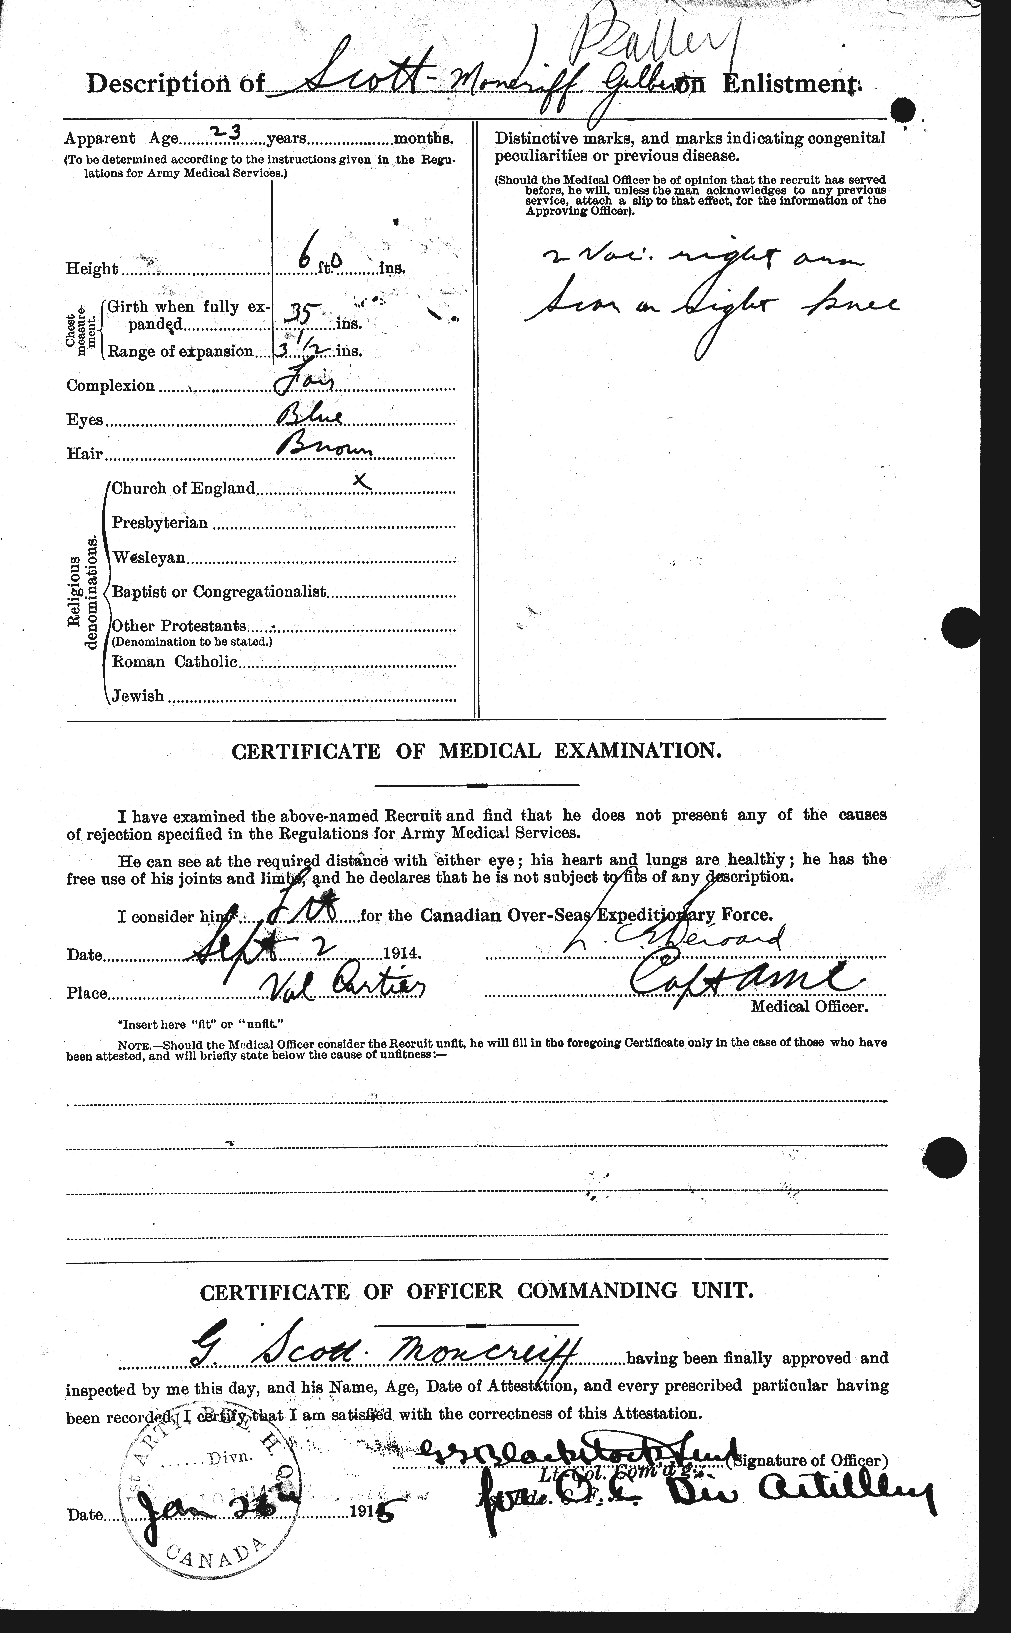 Dossiers du Personnel de la Première Guerre mondiale - CEC 087242b